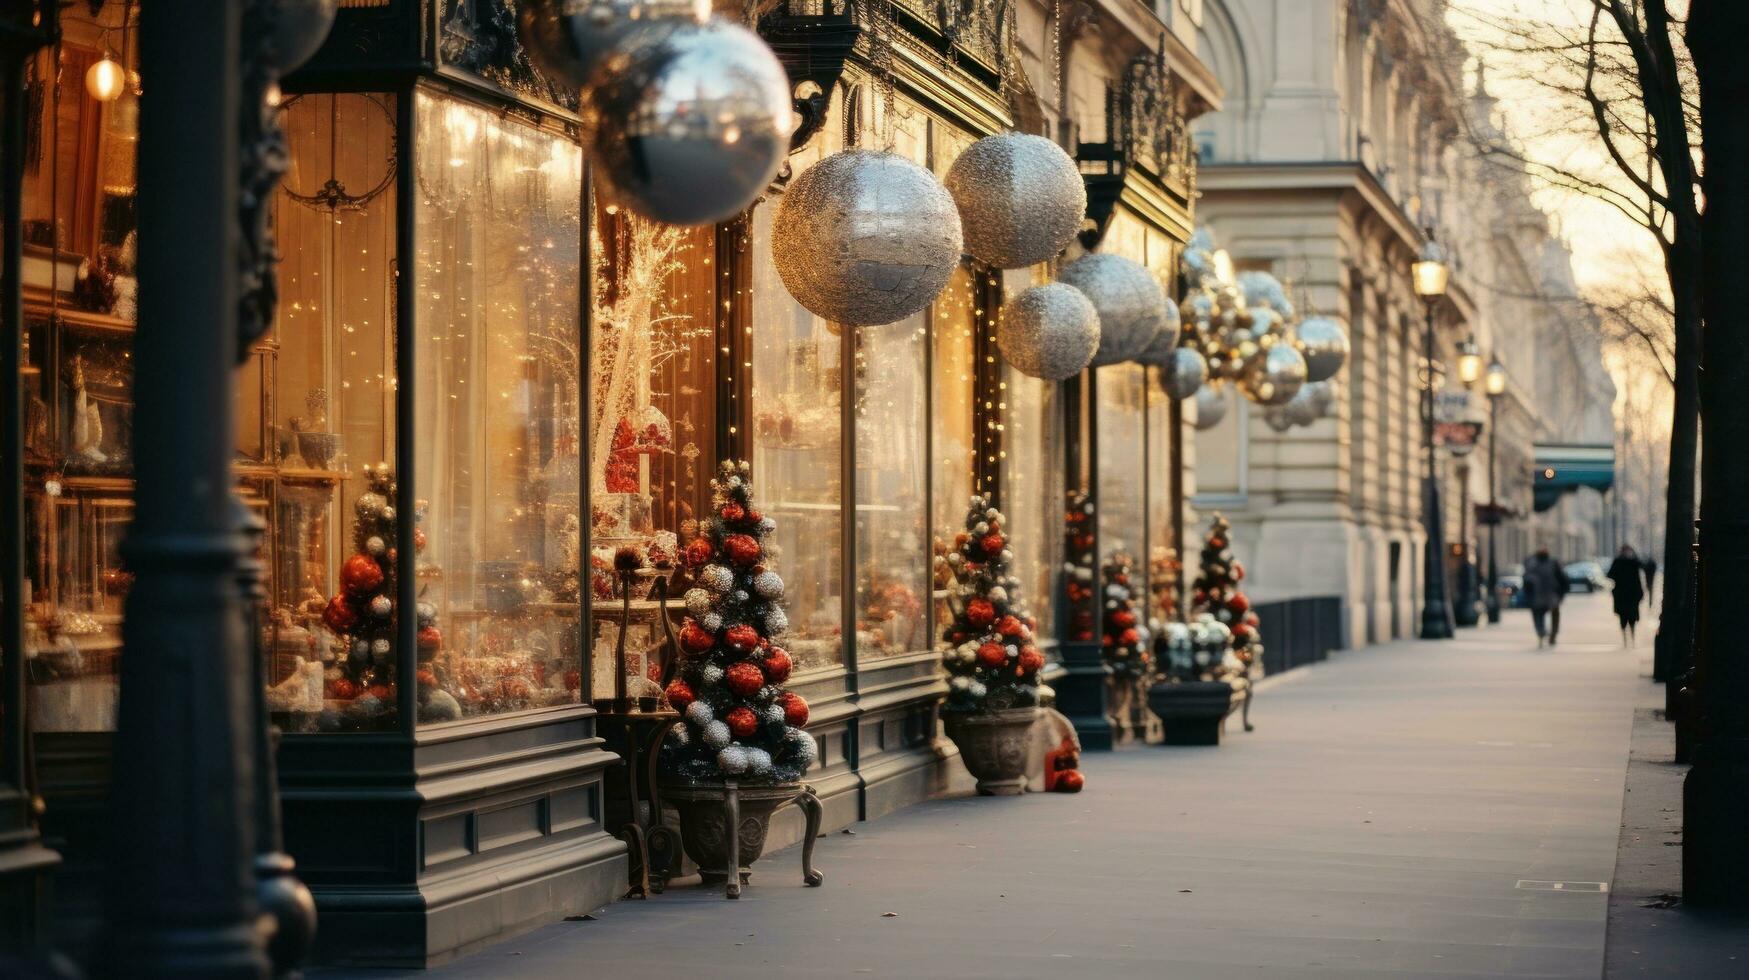 jul dekorationer på stad gata foto